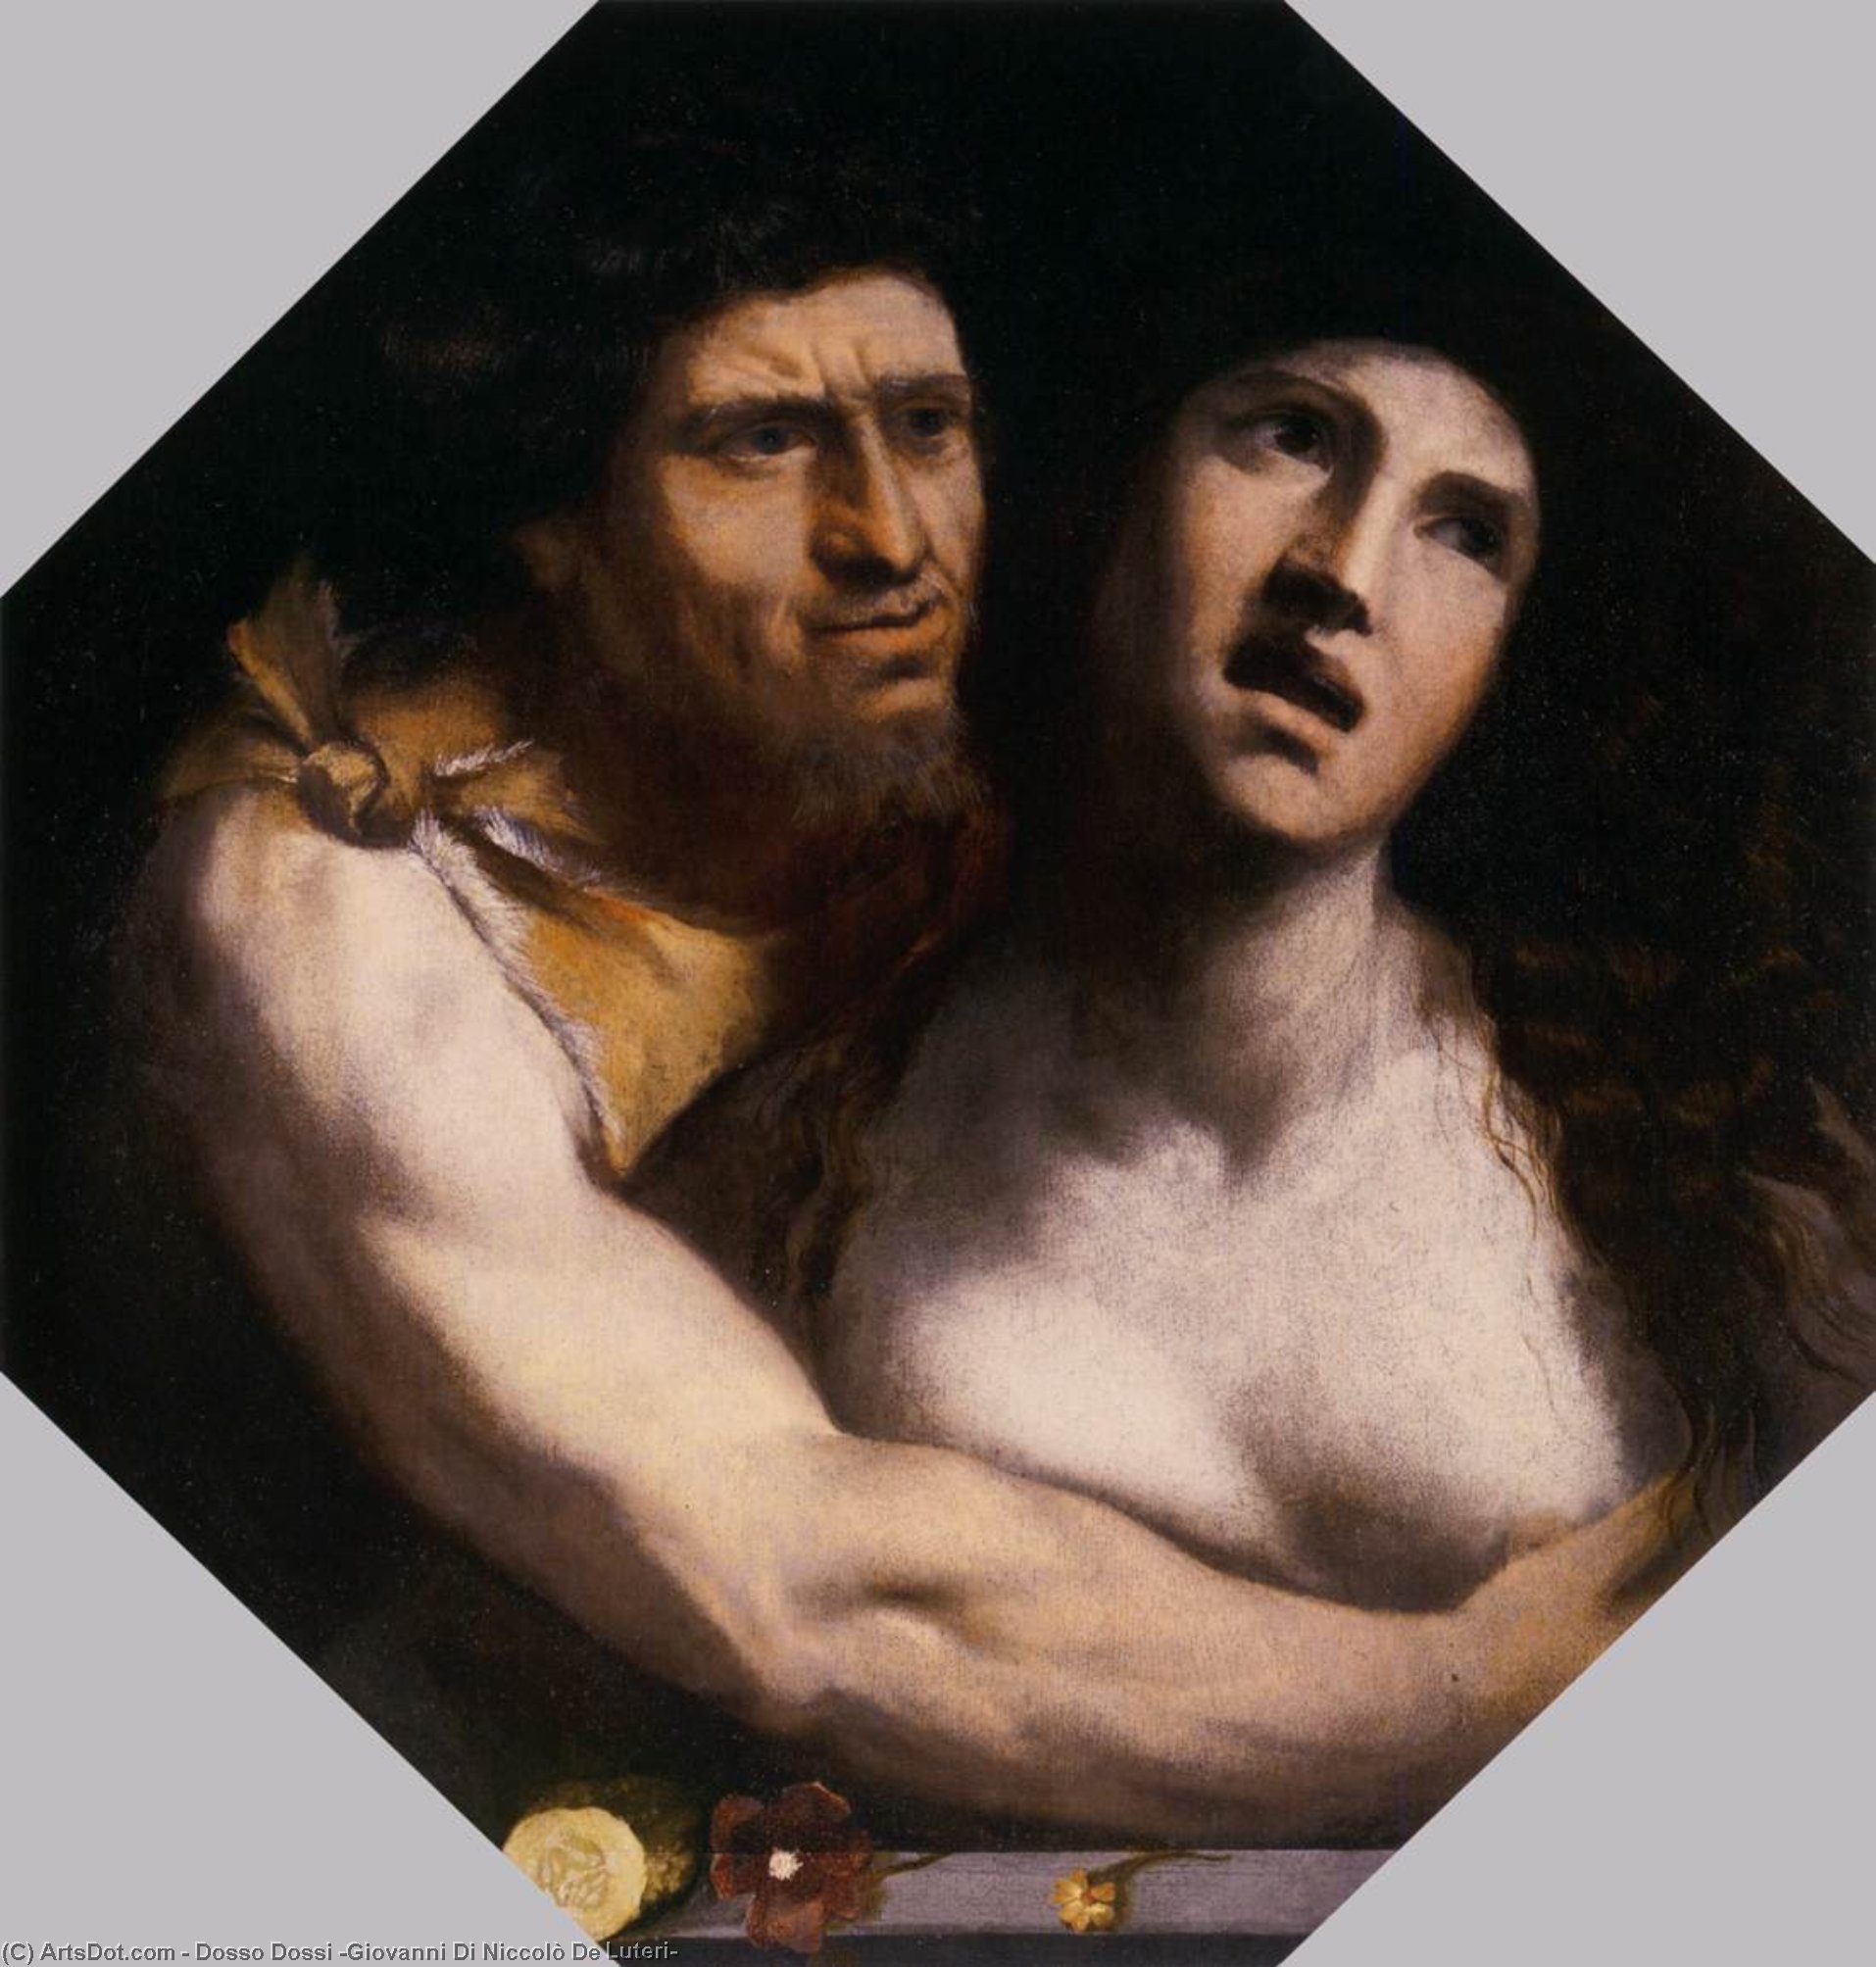 WikiOO.org - Encyclopedia of Fine Arts - Lukisan, Artwork Dosso Dossi (Giovanni Di Niccolò De Luteri) - The Embrace